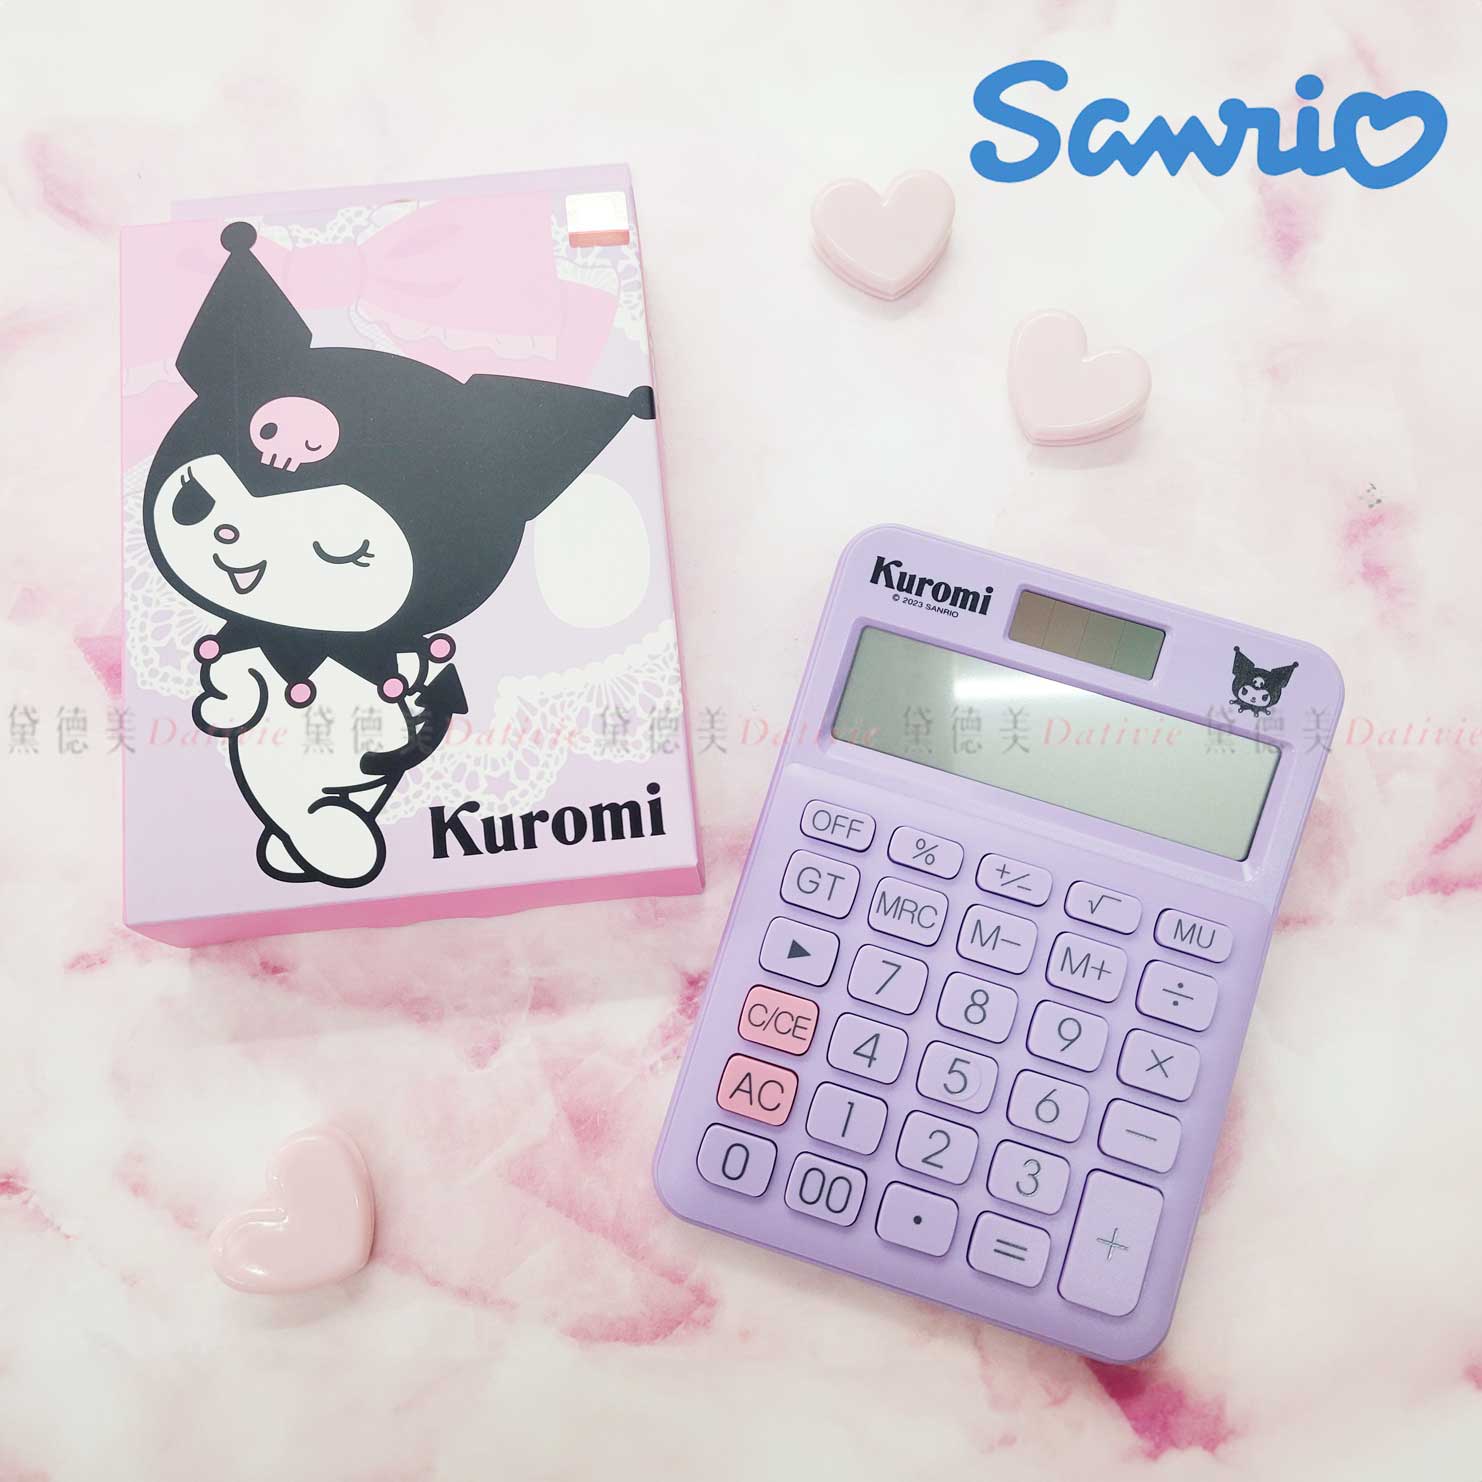 輕便型計算機-酷洛米 KUROMI 三麗鷗 Sanrio 正版授權